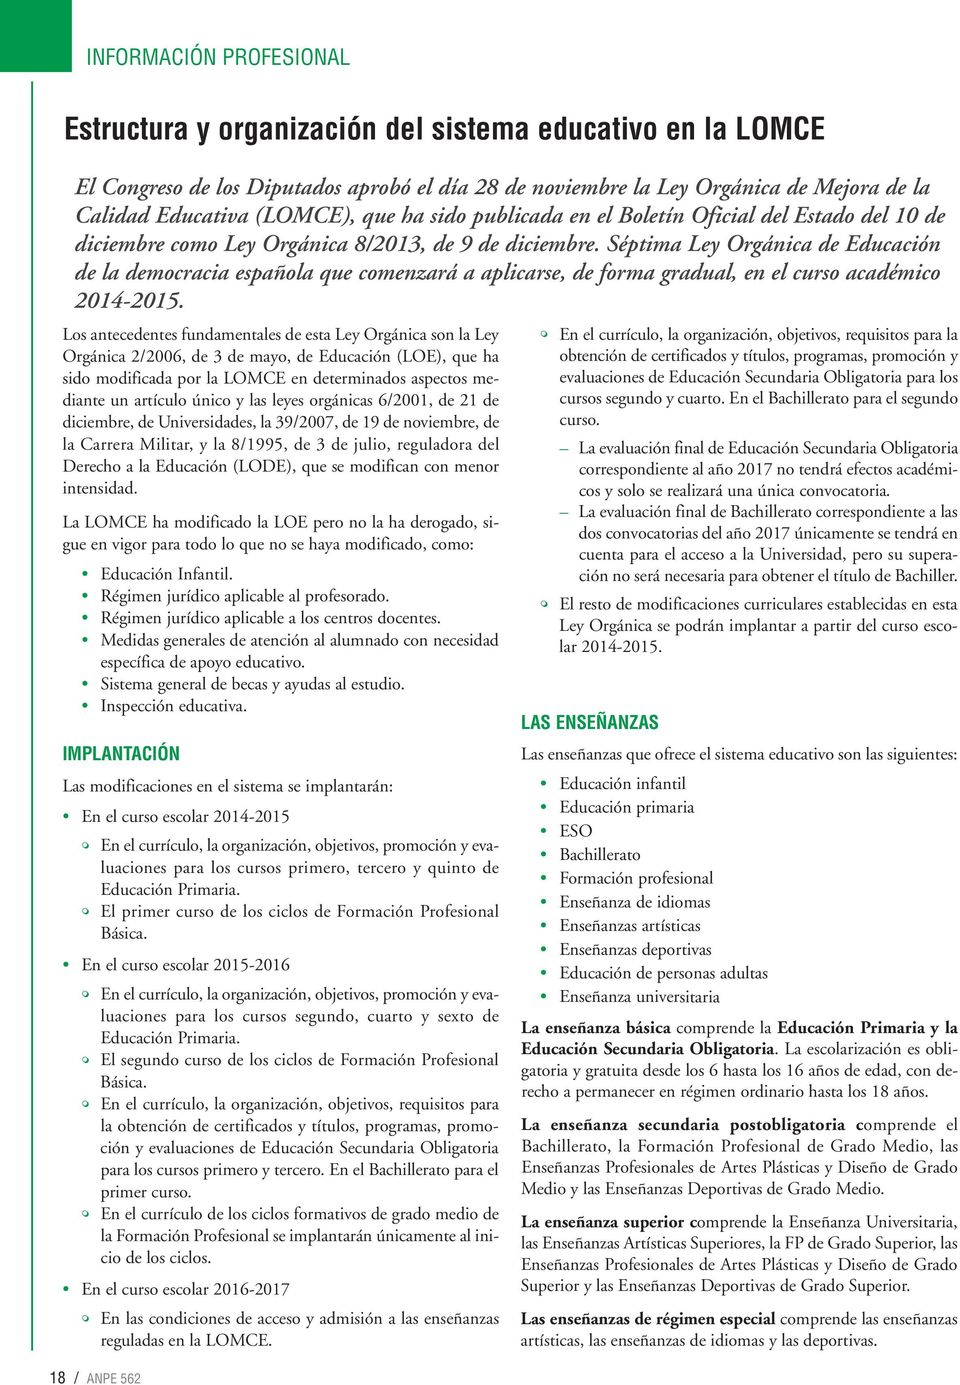 Séptima Ley Orgánica de Educación de la democracia española que comenzará a aplicarse, de forma gradual, en el curso académico 2014-2015.